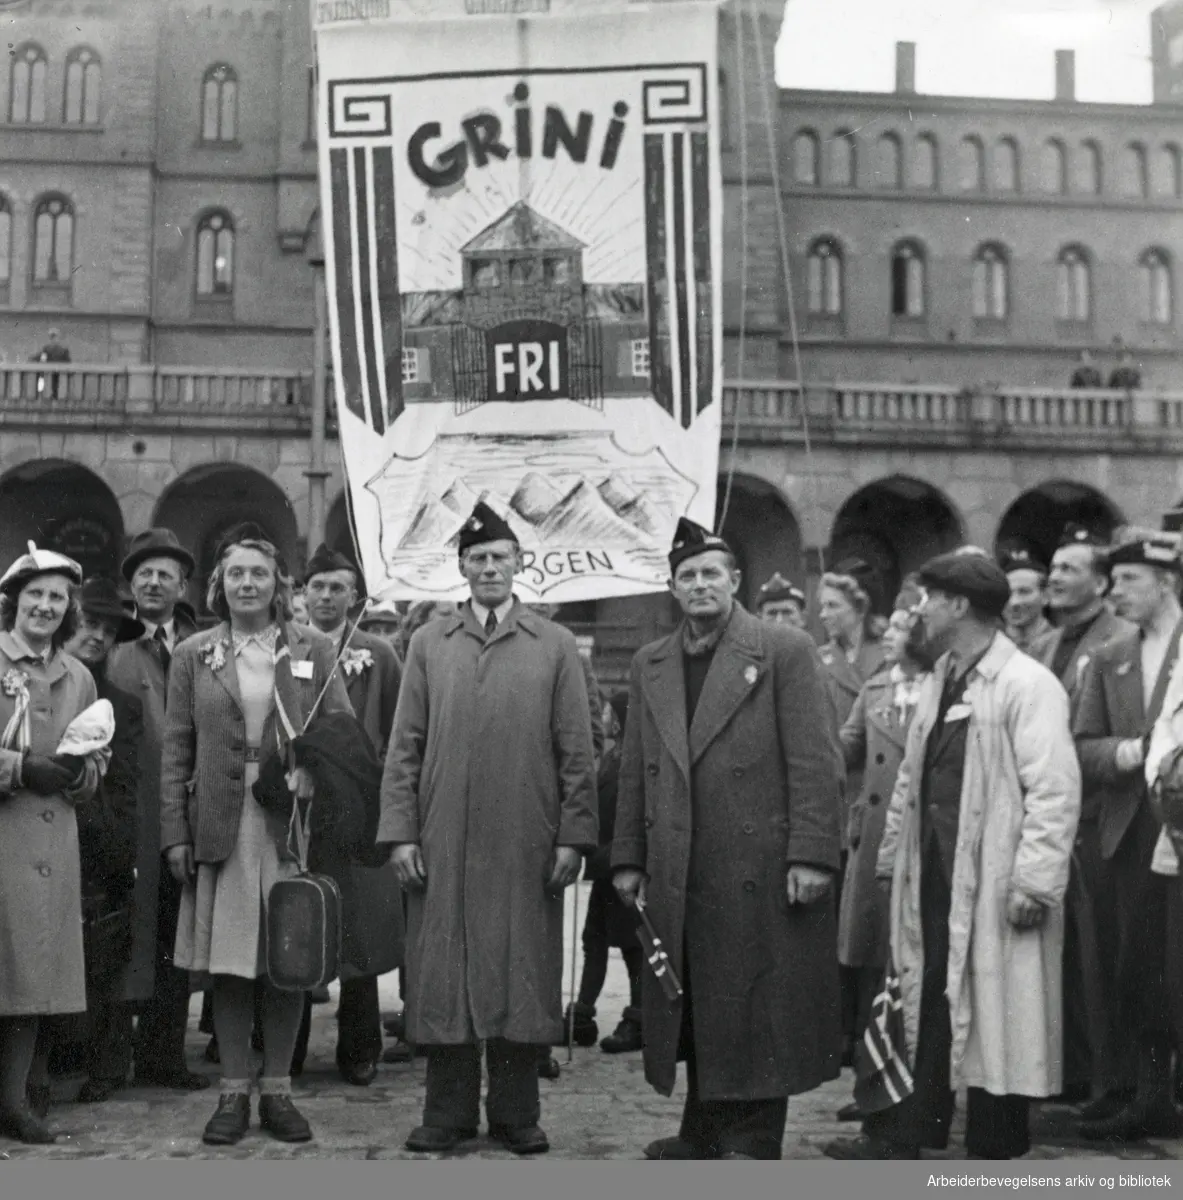 I midten fhv. stortingsmann Karl M. Johannessen. Ved hans venstre side står Gerd Svendsen og til høyre, .ordfører i Laksevåg Alf Pettersen. Løslatelsen av fanger på Grini. Bergensere foran sin Grini-fane på Youngstorget, mai 1945.